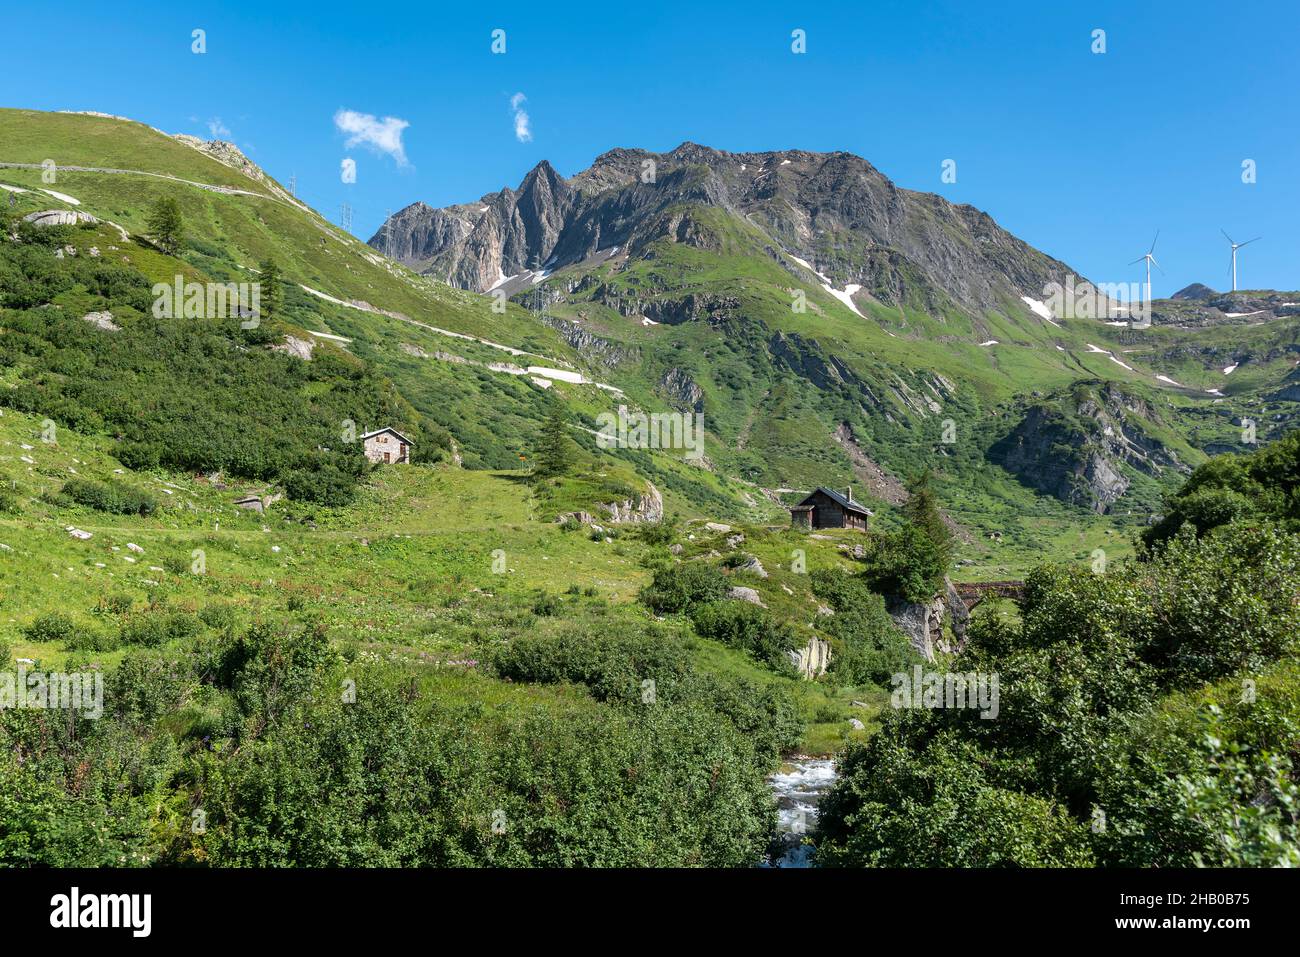 Alpine landscape along the Nufenen Pass road below Nufenen Pass, Ulrichen, Valais, Switzerland, Europe Stock Photo